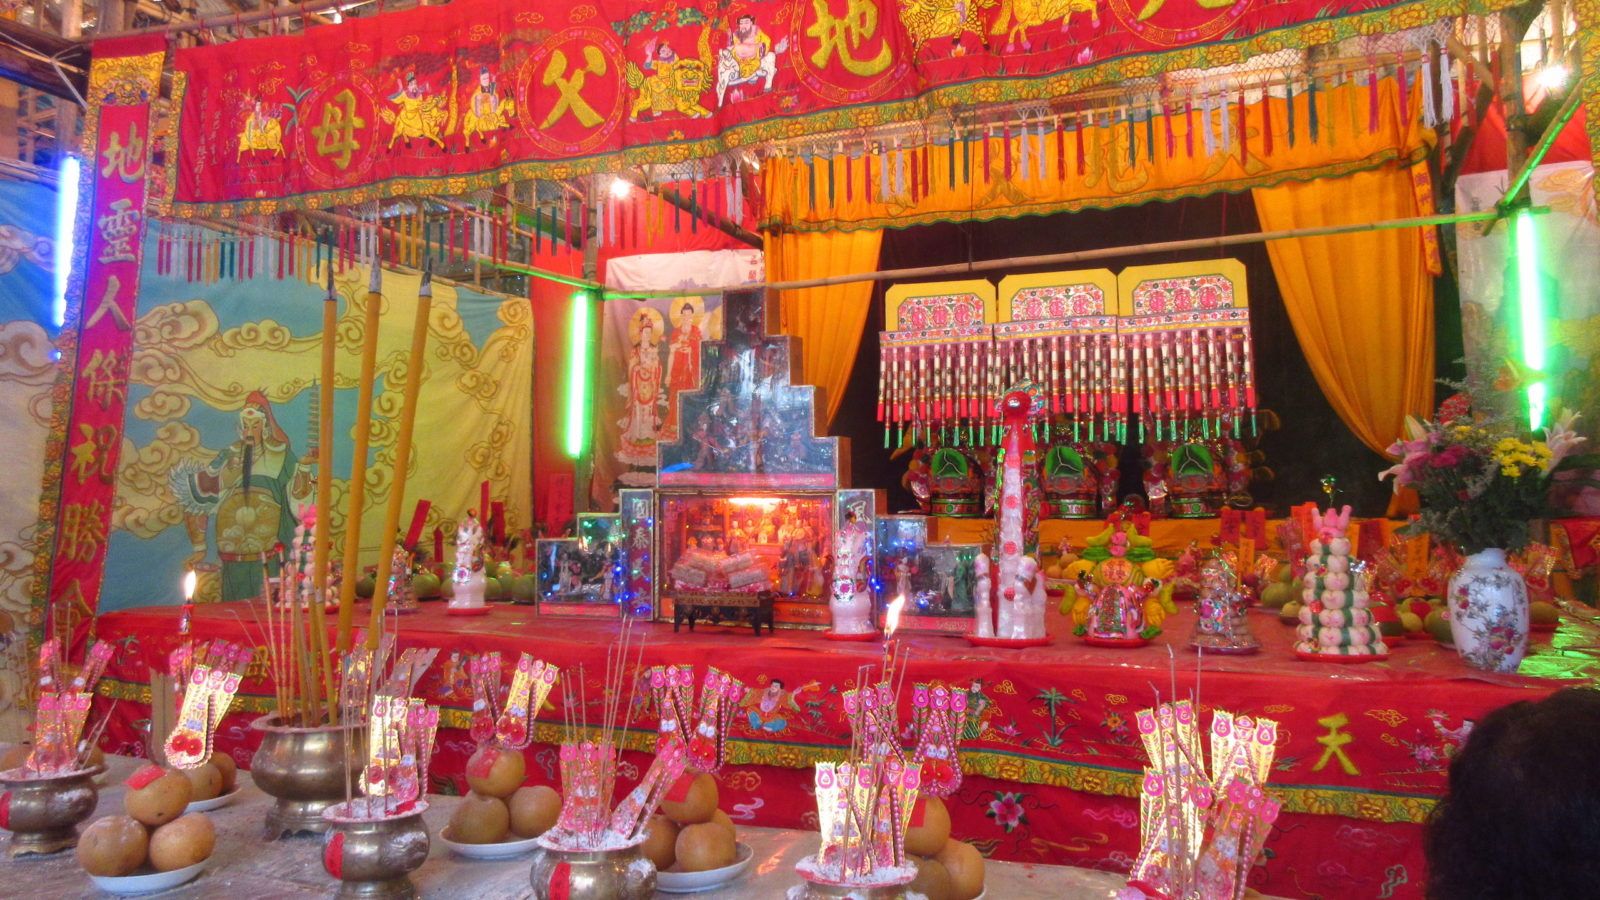 Hội chùa Yulan là một trong những lễ hội truyền thống quan trọng nhất ở Trung Quốc, đi kèm với nhiều hoạt động văn hóa và tôn giáo. Tham dự lễ hội, bạn sẽ được tự do hòa mình vào không khí tưng bừng và trang trọng của người dân Trung Quốc. Hãy xem hình ảnh liên quan để khám phá thêm về Yu Lan Festival và những điều thú vị của lễ hội này.